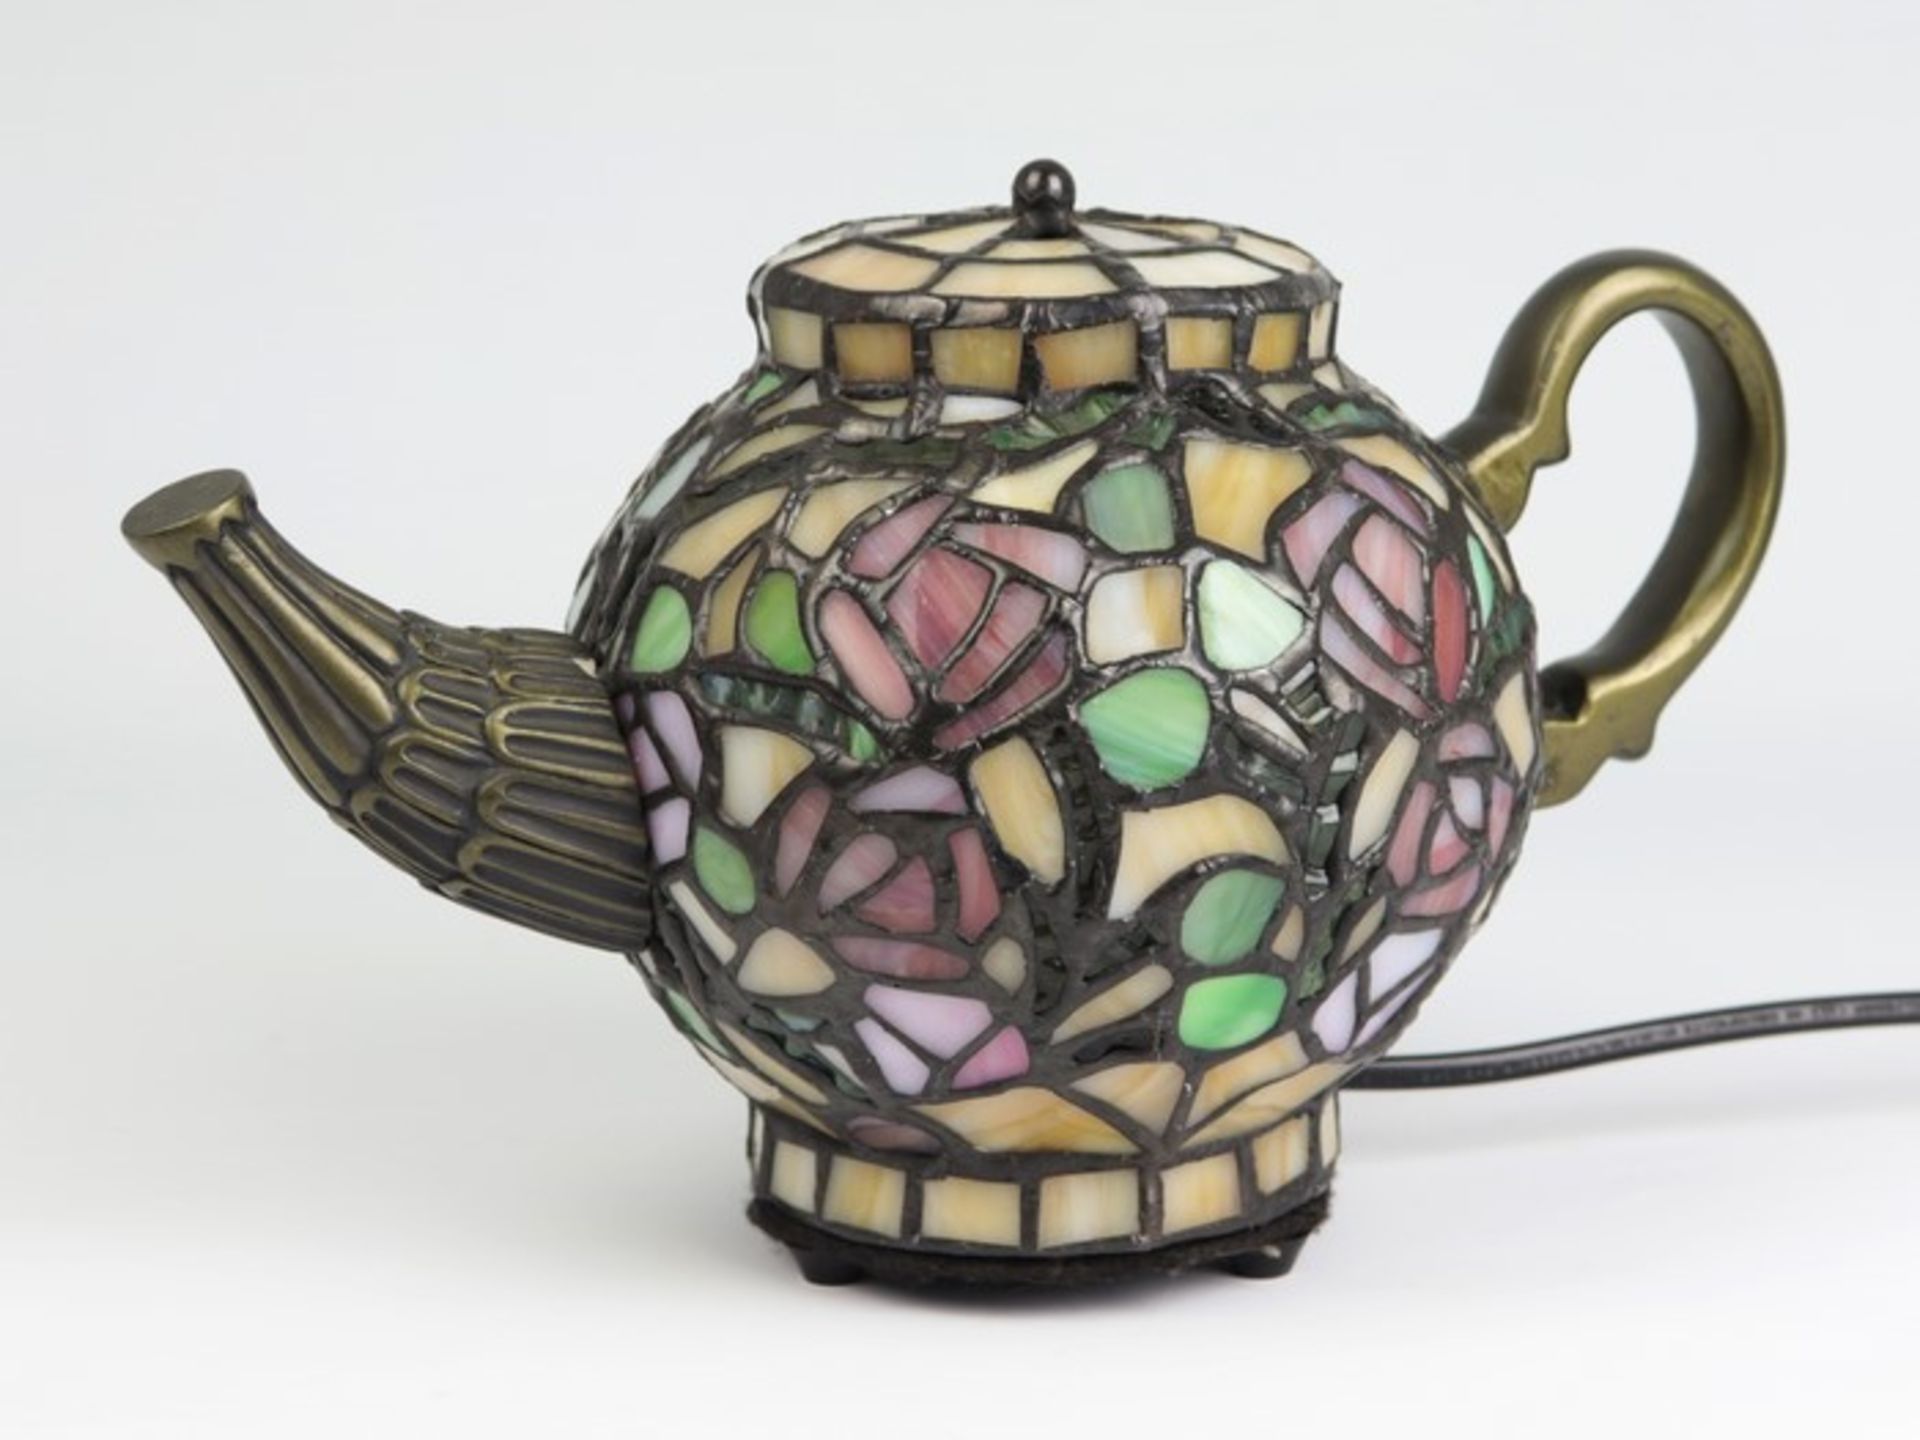 Tischlampe - Tiffany-Stilbronzefarbenes Metall/Bleiglas, einflammig, ausgeformt als vollplastische - Image 2 of 2